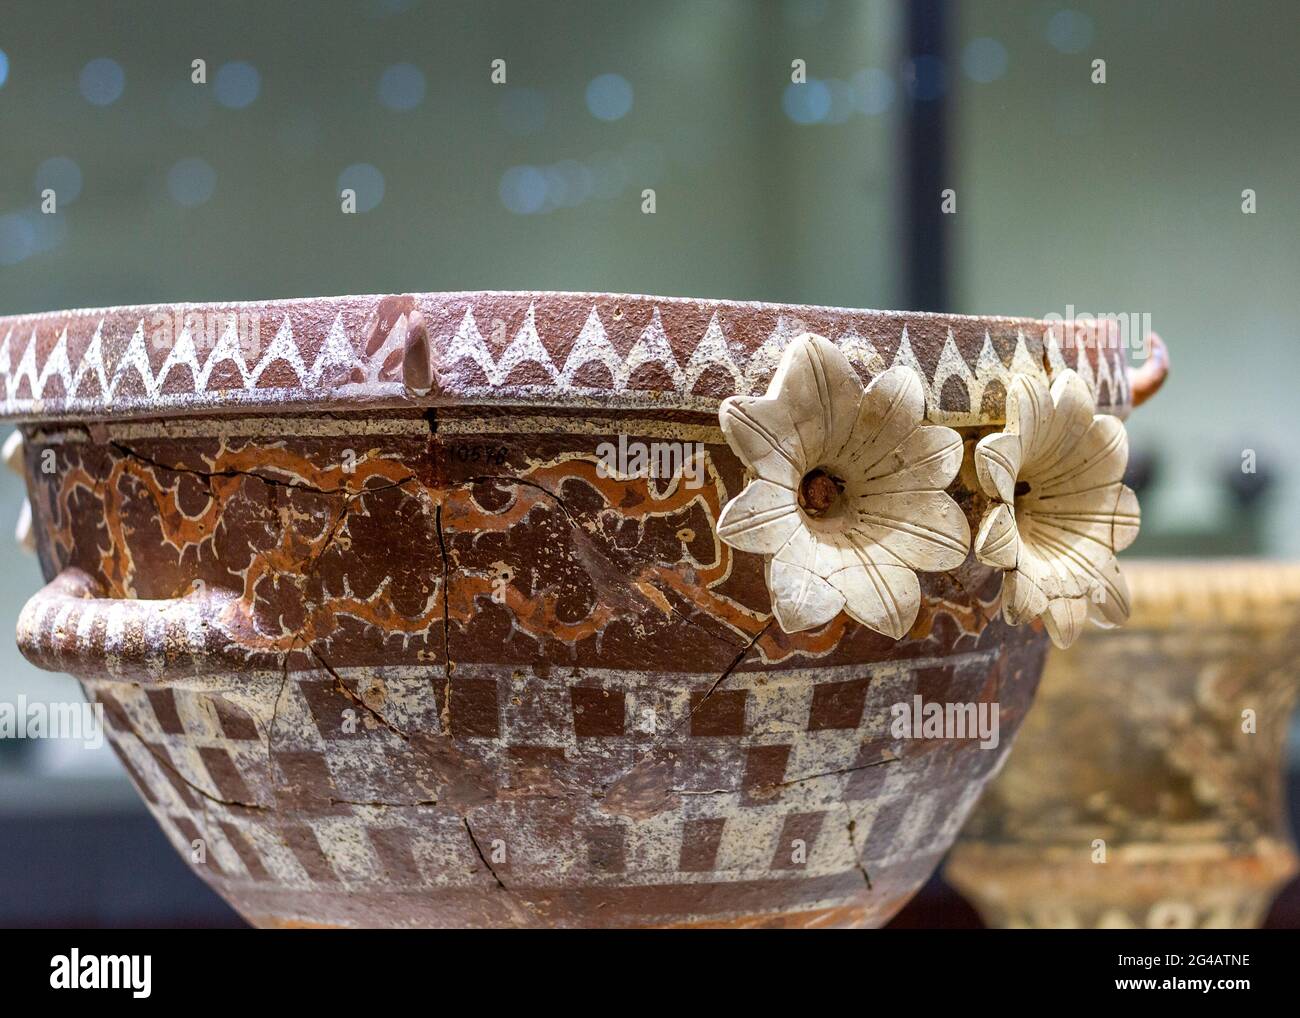 Antica ciotola di argilla con fiori in rilievo dell'età del bronzo medio, trovata nel palazzo di Faistos (Festos), nell'isola di Creta, Grecia, Europa. Foto Stock